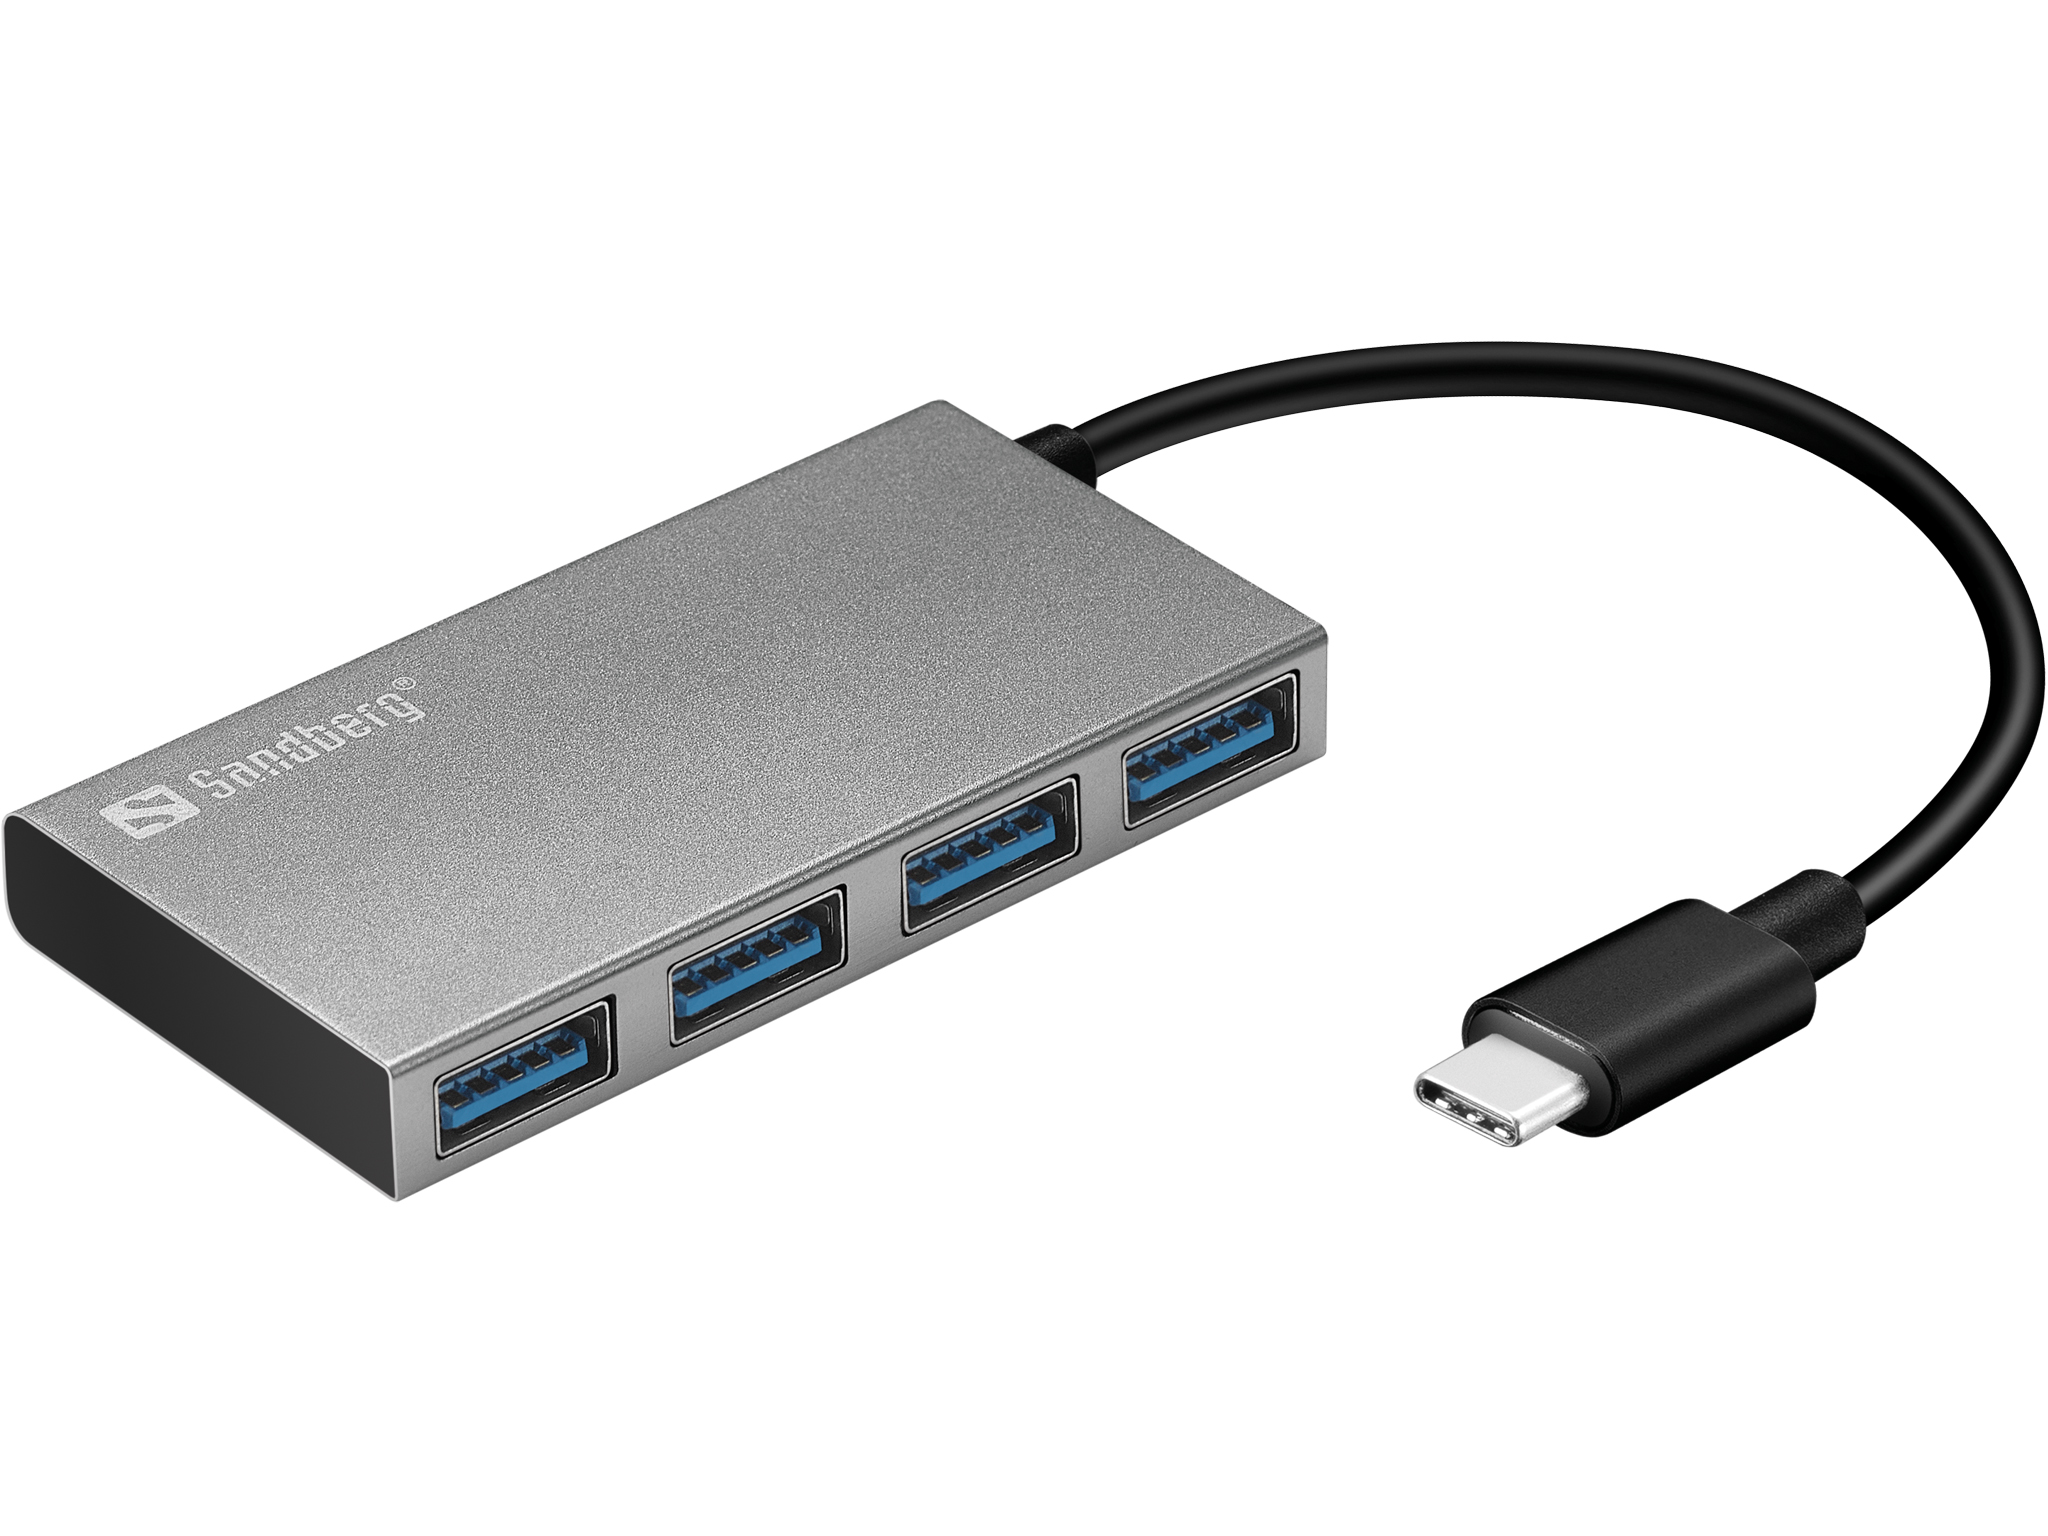 Sandberg 136-20 USB-C to 4 xUSB 3.0 Pocket Hub